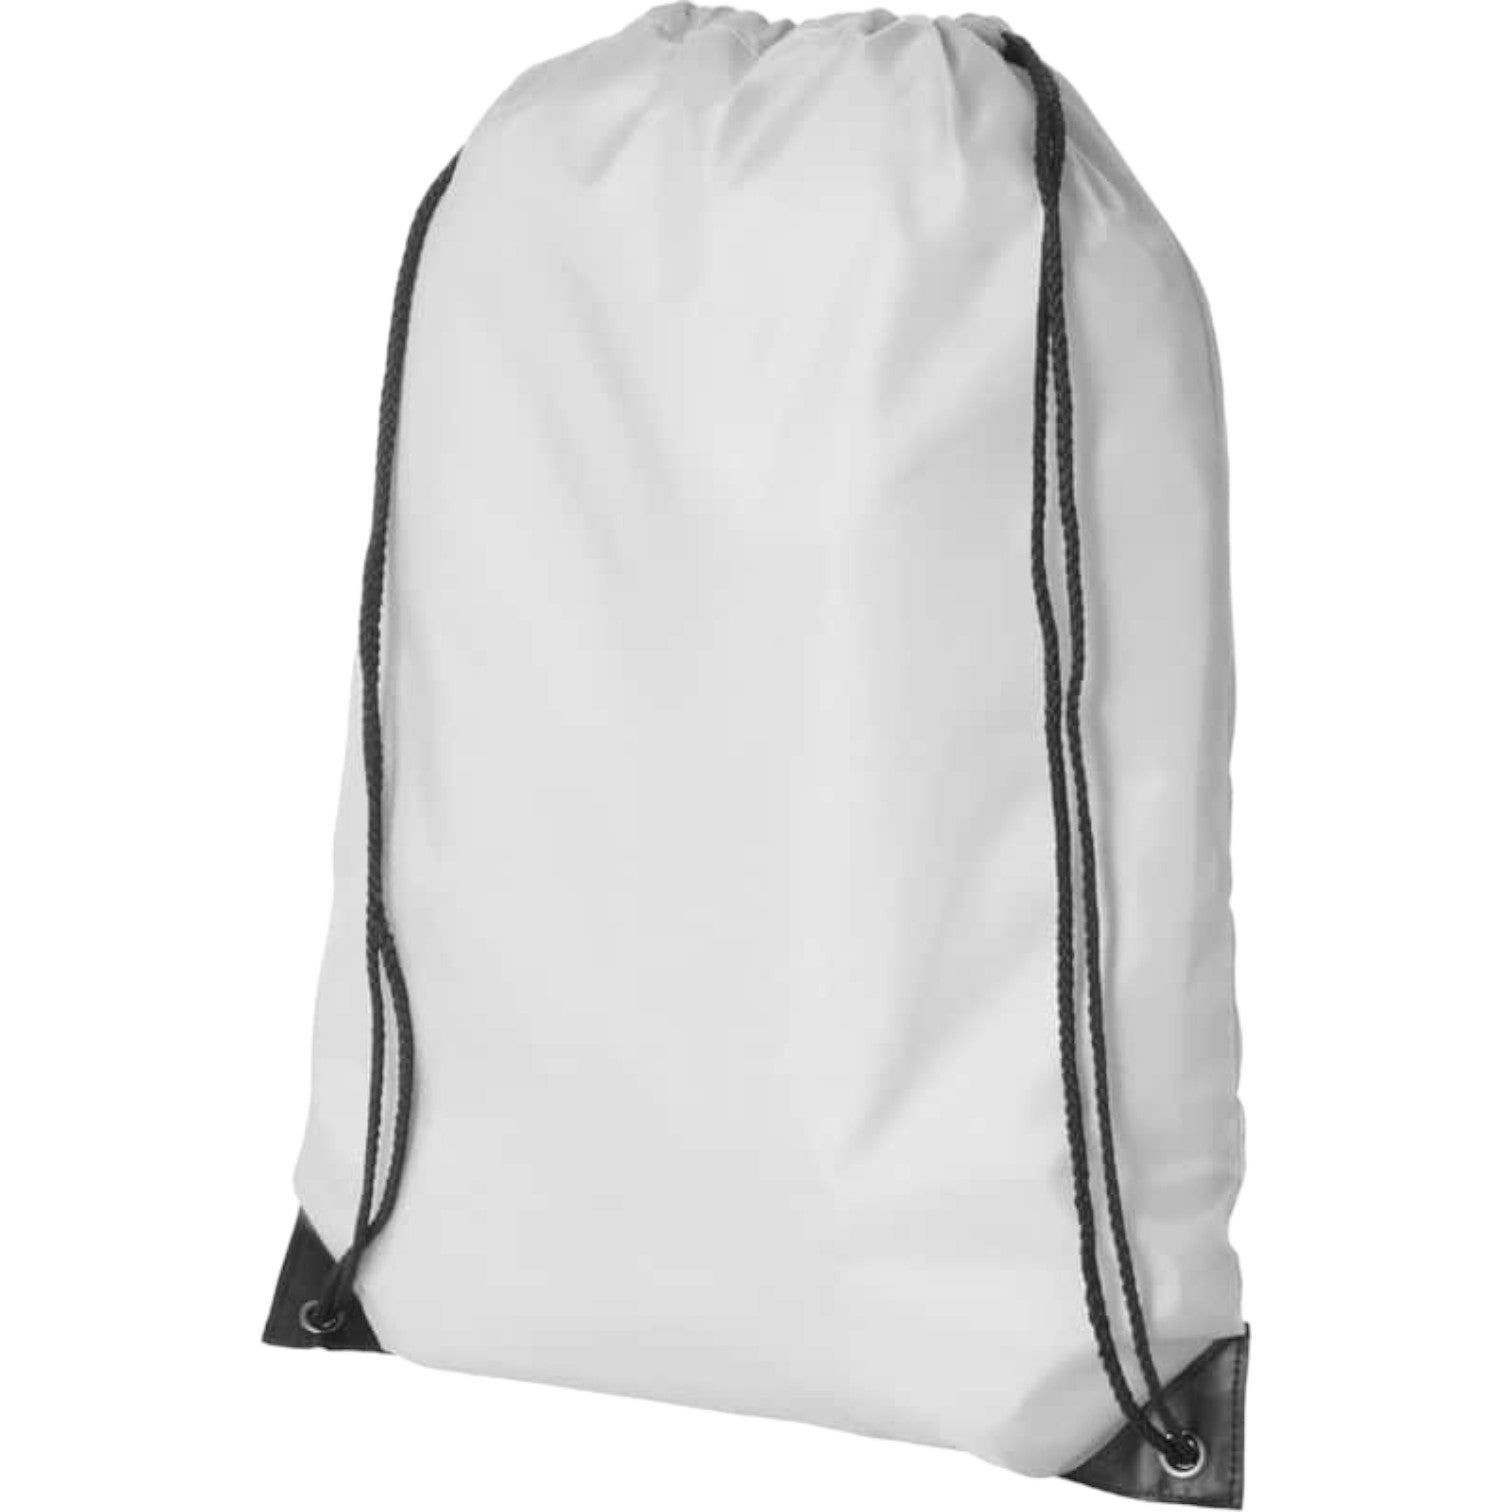 210D Polyster Drawstring Bag - White